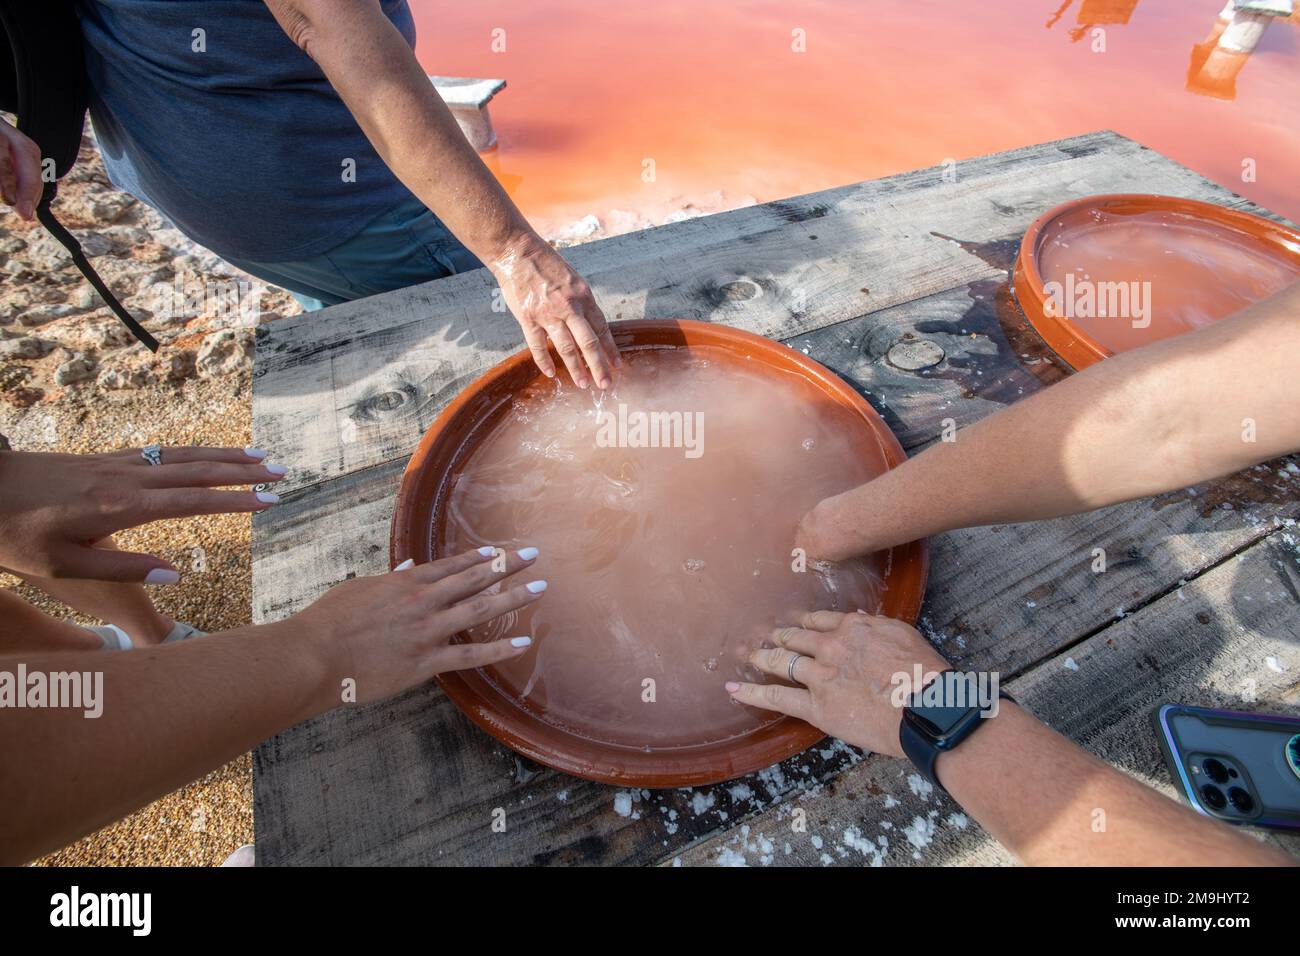 Les gens se retrouvant à l'eau salée curative des marais salants, Isla Cristina, Espagne Banque D'Images